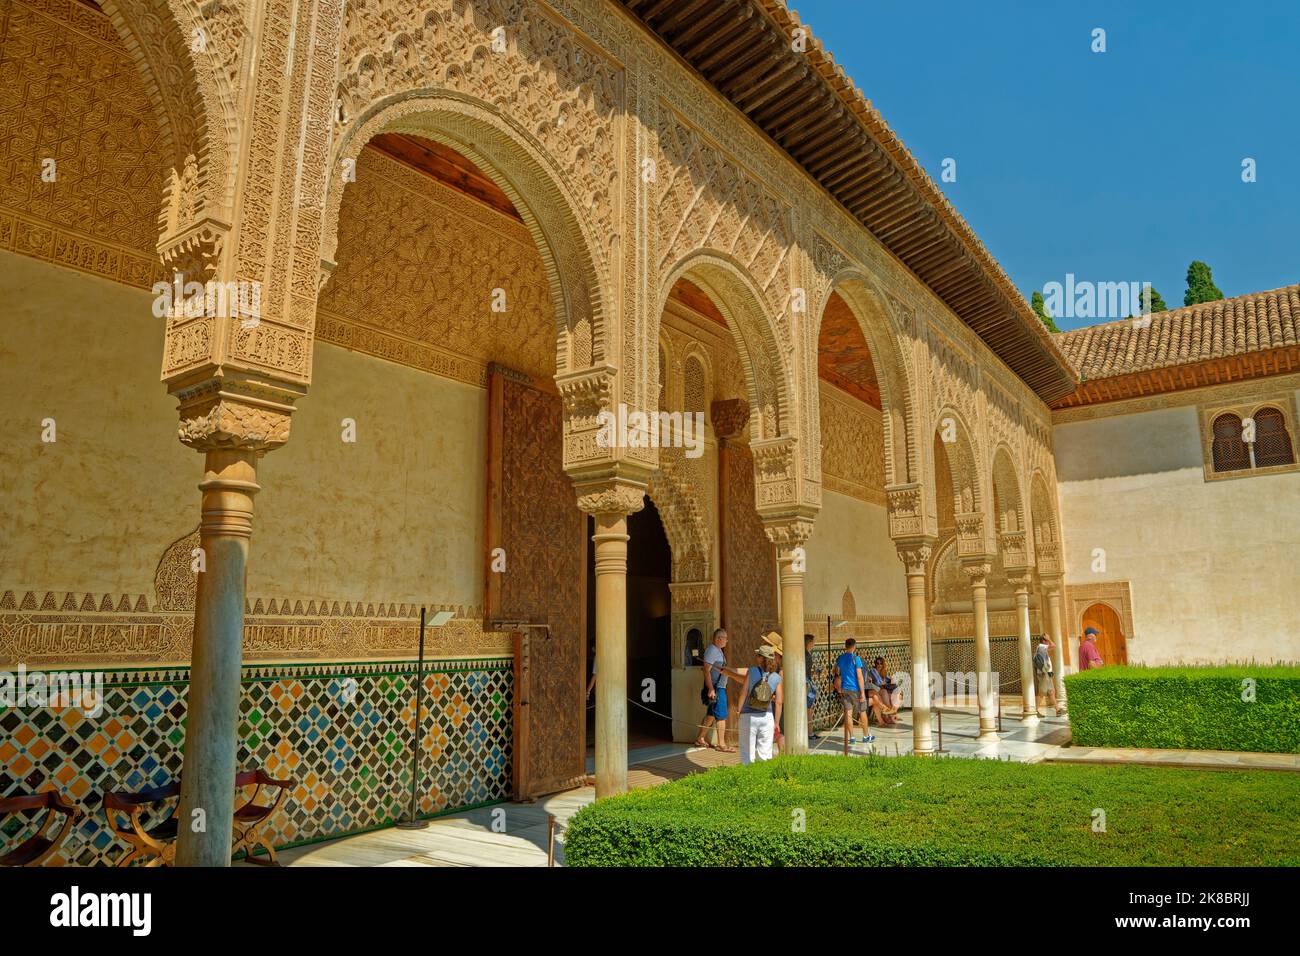 Der Hof der Myrtles, ein Teil des Nasriden-Comares-Palastes, Teil des Alhambra-Palastkomplexes in Granada, Andalusien, Spanien. Stockfoto